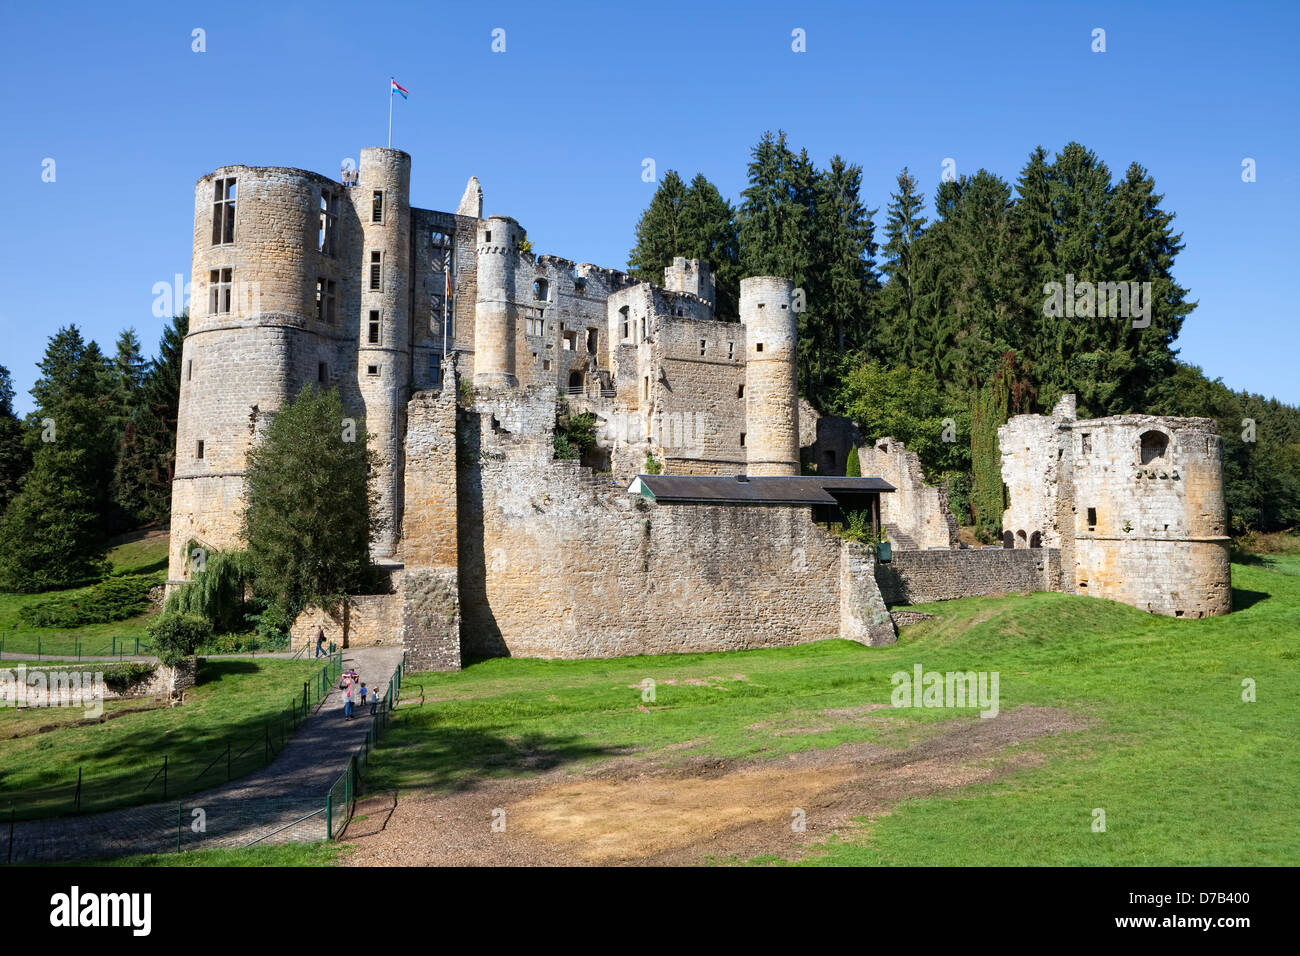 Castle ruins of Beaufort or Belfort, Luxembourg, Europe, Die Burgruine Beaufort oder Belfort, Luxemburg, Europa Stock Photo